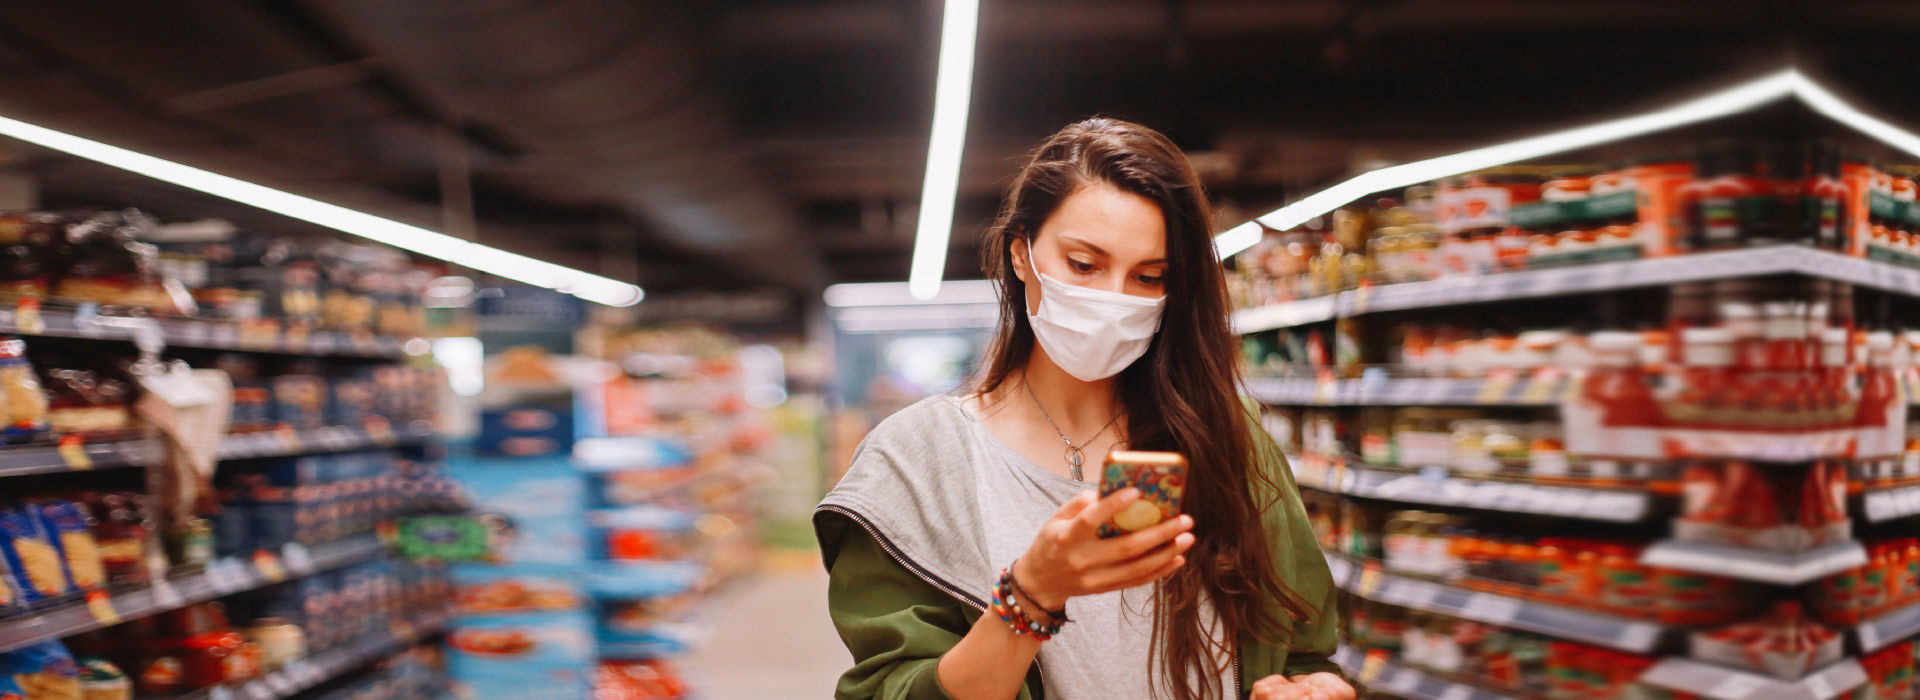 Mujer con mascarilla de compras con su celular en el supermercado